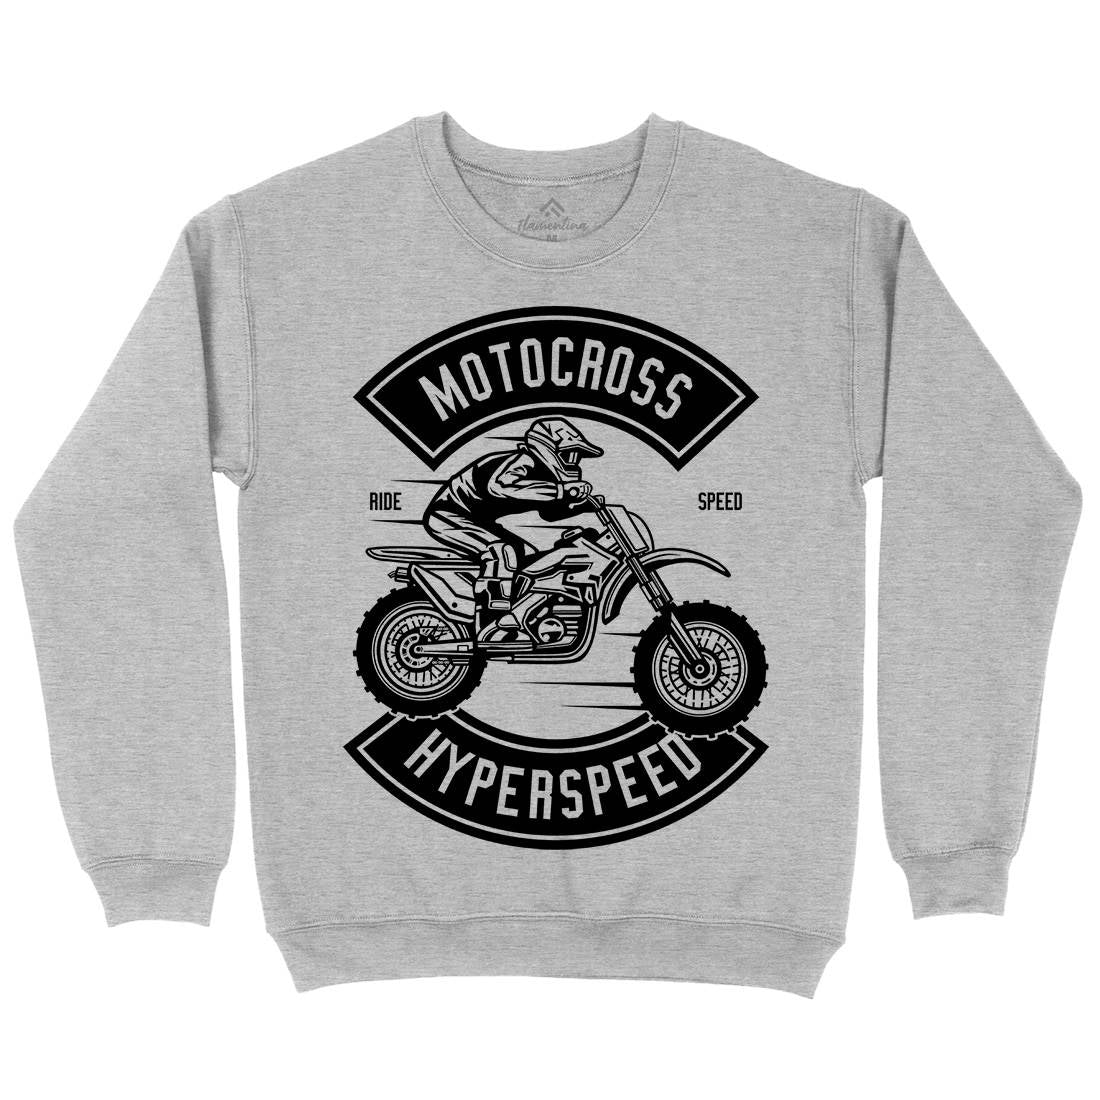 Motocross Hyperspeed Kids Crew Neck Sweatshirt Motorcycles B577